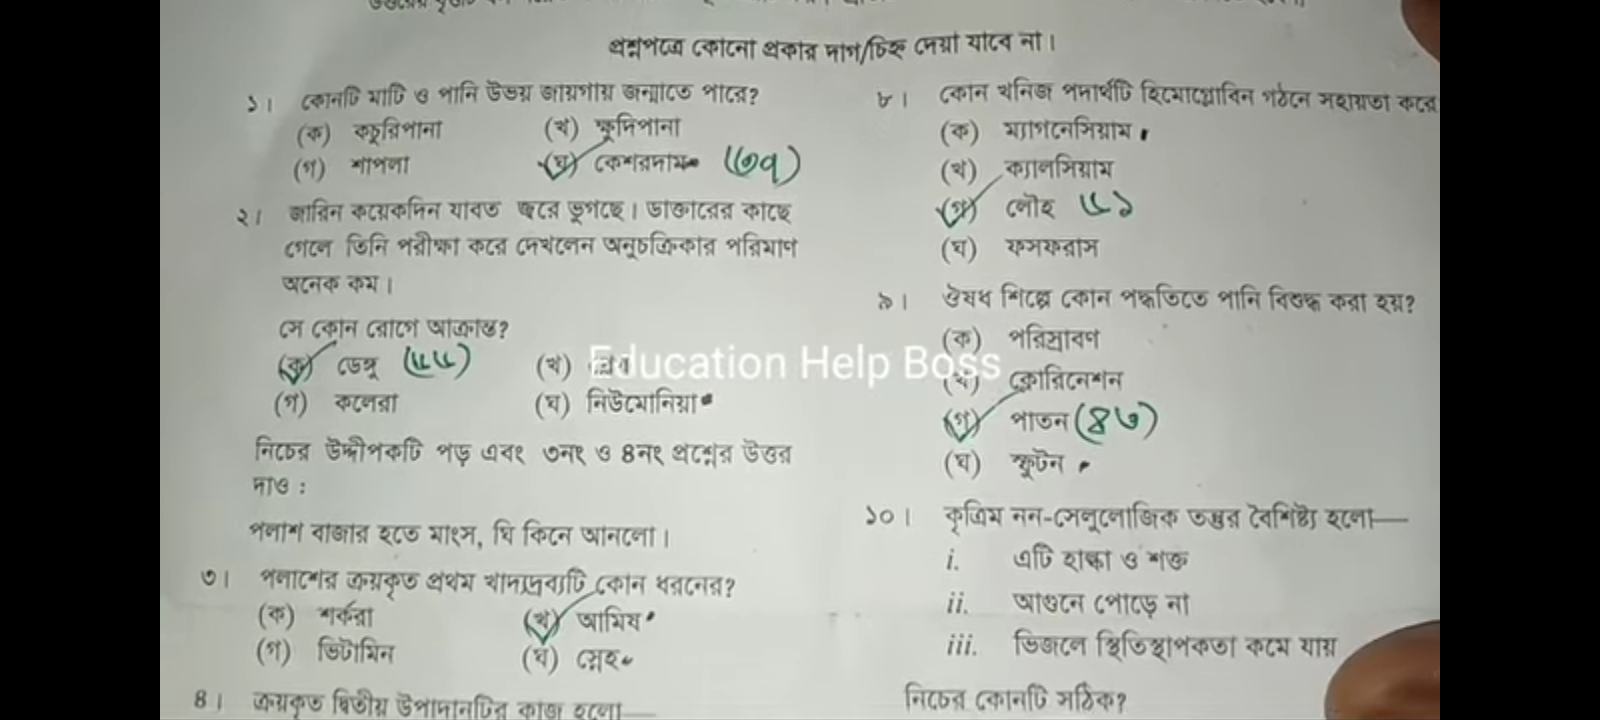 এসএসসি রাজশাহী বোর্ড বিজ্ঞান বহুনির্বাচনি (MCQ) উত্তরমালা সমাধান ২০২৩, SSC Rajshahi Board Science MCQ Question & Answer 2023, এসএসসি বিজ্ঞান রাজশাহী বোর্ড এমসিকিউ সমাধান ২০২৩